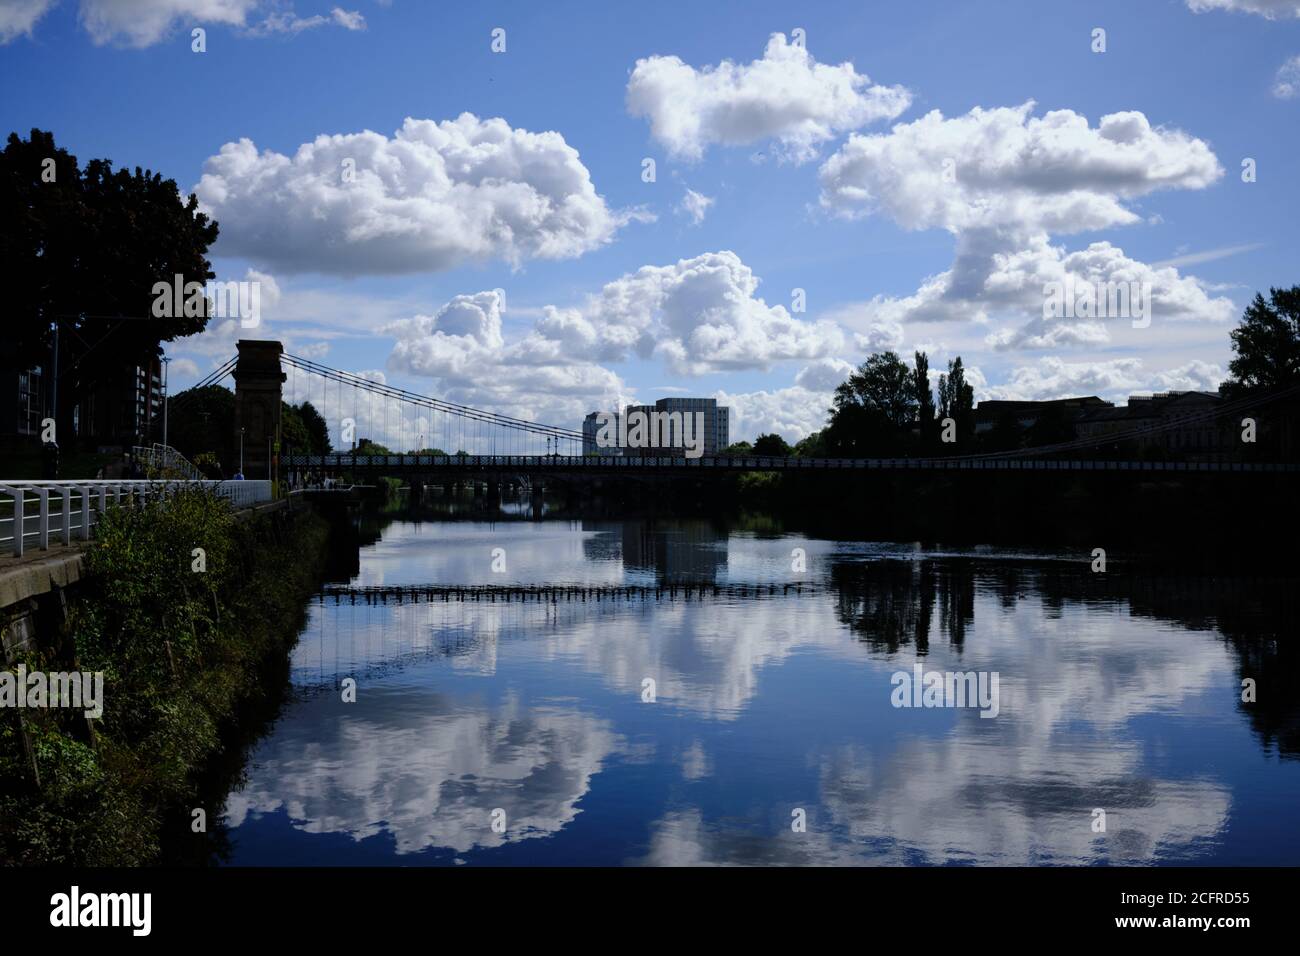 Fluss Clyde (Broomielaw, Stadtzentrum) an einem sonnigen Tag. Wolkenreflexionen auf dem Wasser. Glasgow. August 2020. Stockfoto